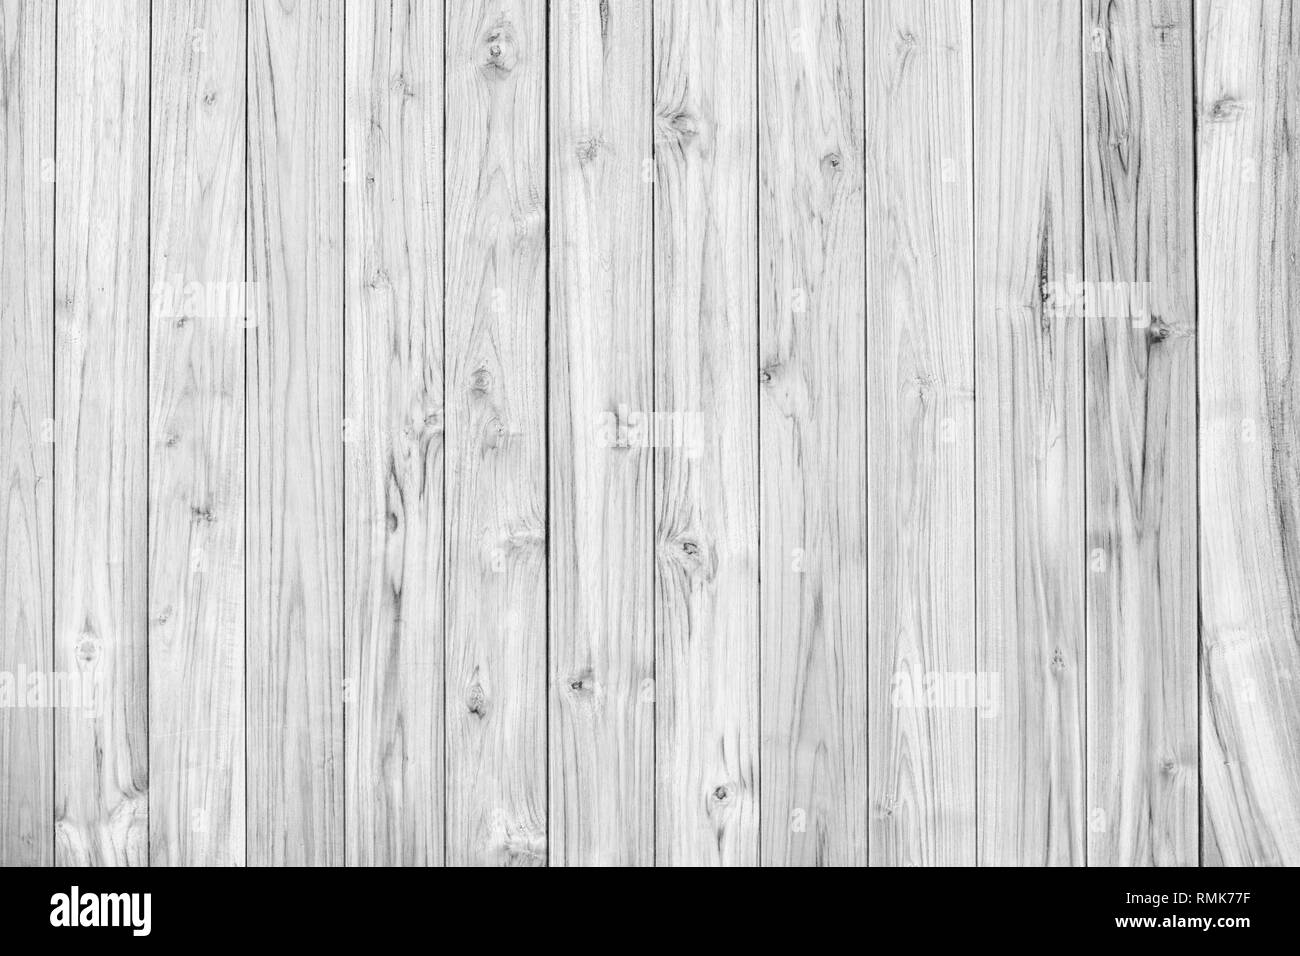 Weiß Teak Holz Textur Holz Hintergrund Hintergrund für Präsentationen Platz für Text Komposition kunst Bild, Website, Magazin oder grafik design Stockfoto